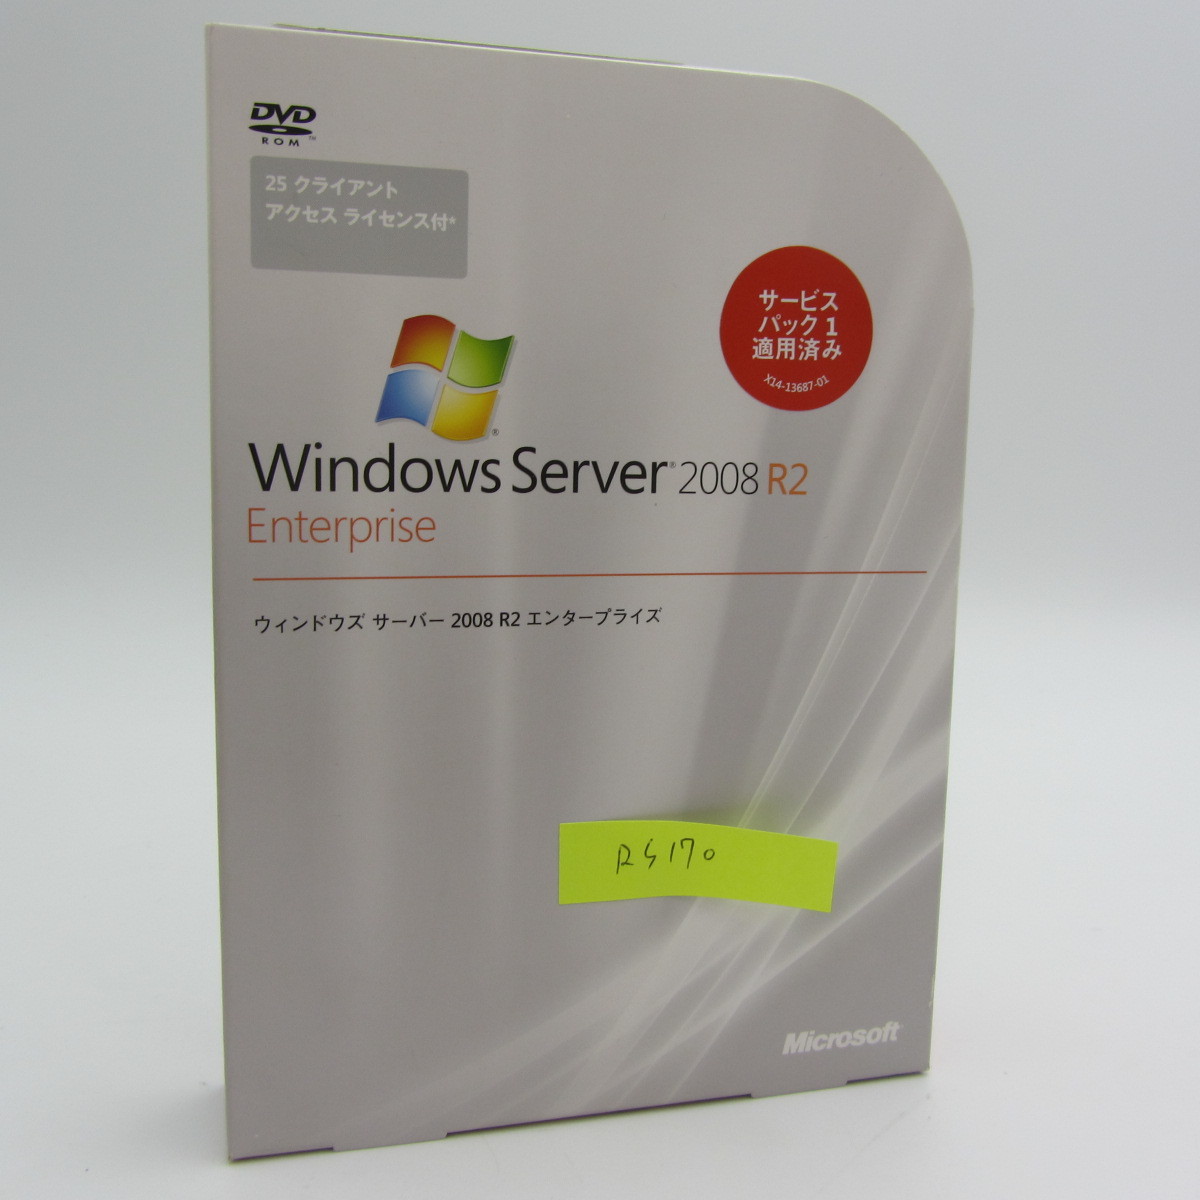 NA-121●Windows Server 2008 R2 EnterPrise サービスパック 1適用済み /25CAL付き/25 クライアント アクセス ライセンス付き パッケージ版